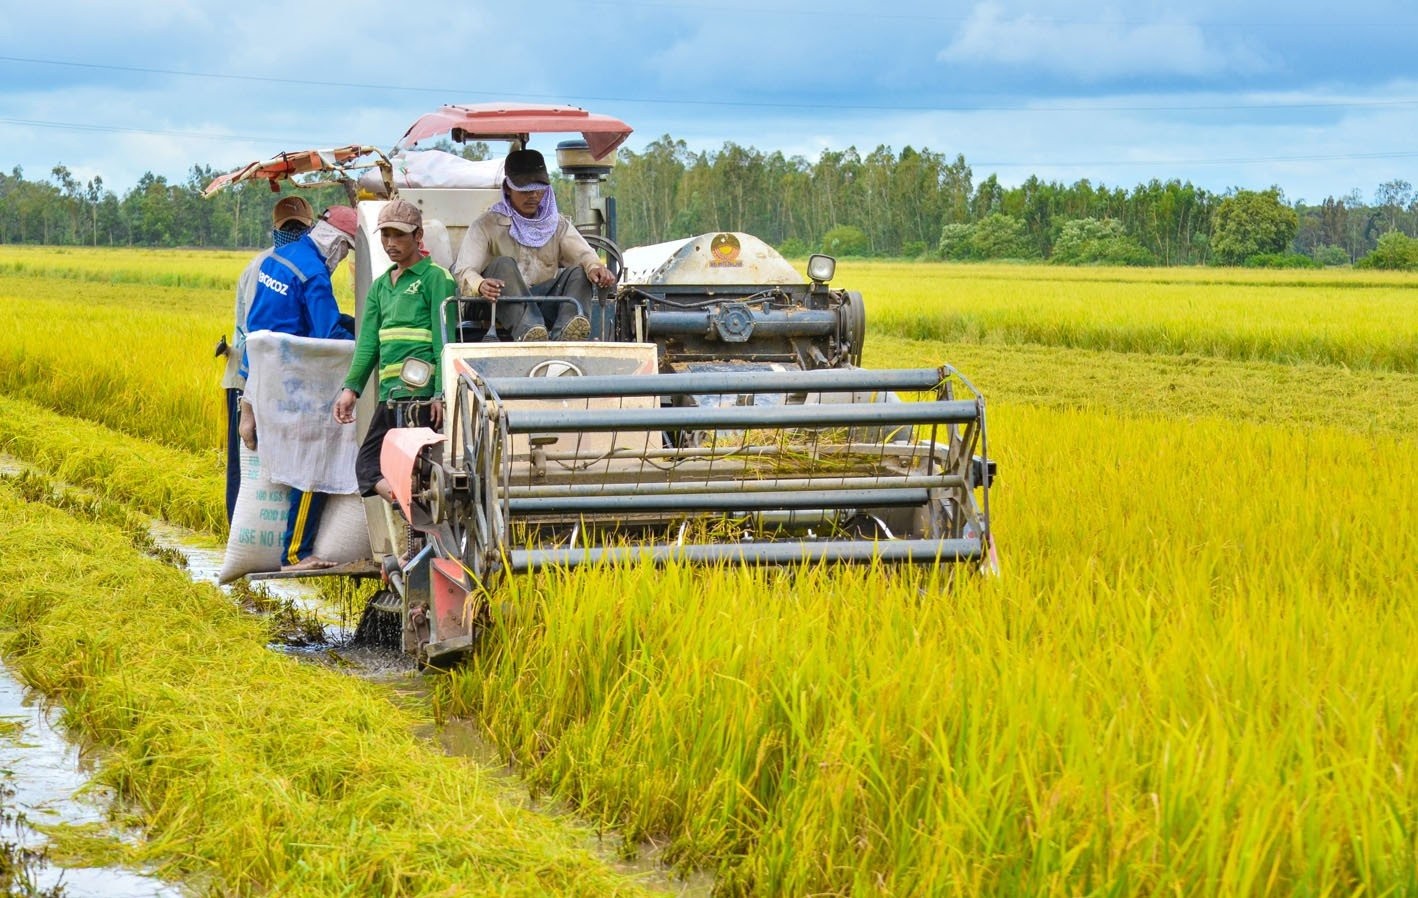 Ngành trồng lúa nước được xem là ngành trọng điểm của nền nông nghiệp Đông Nam Á